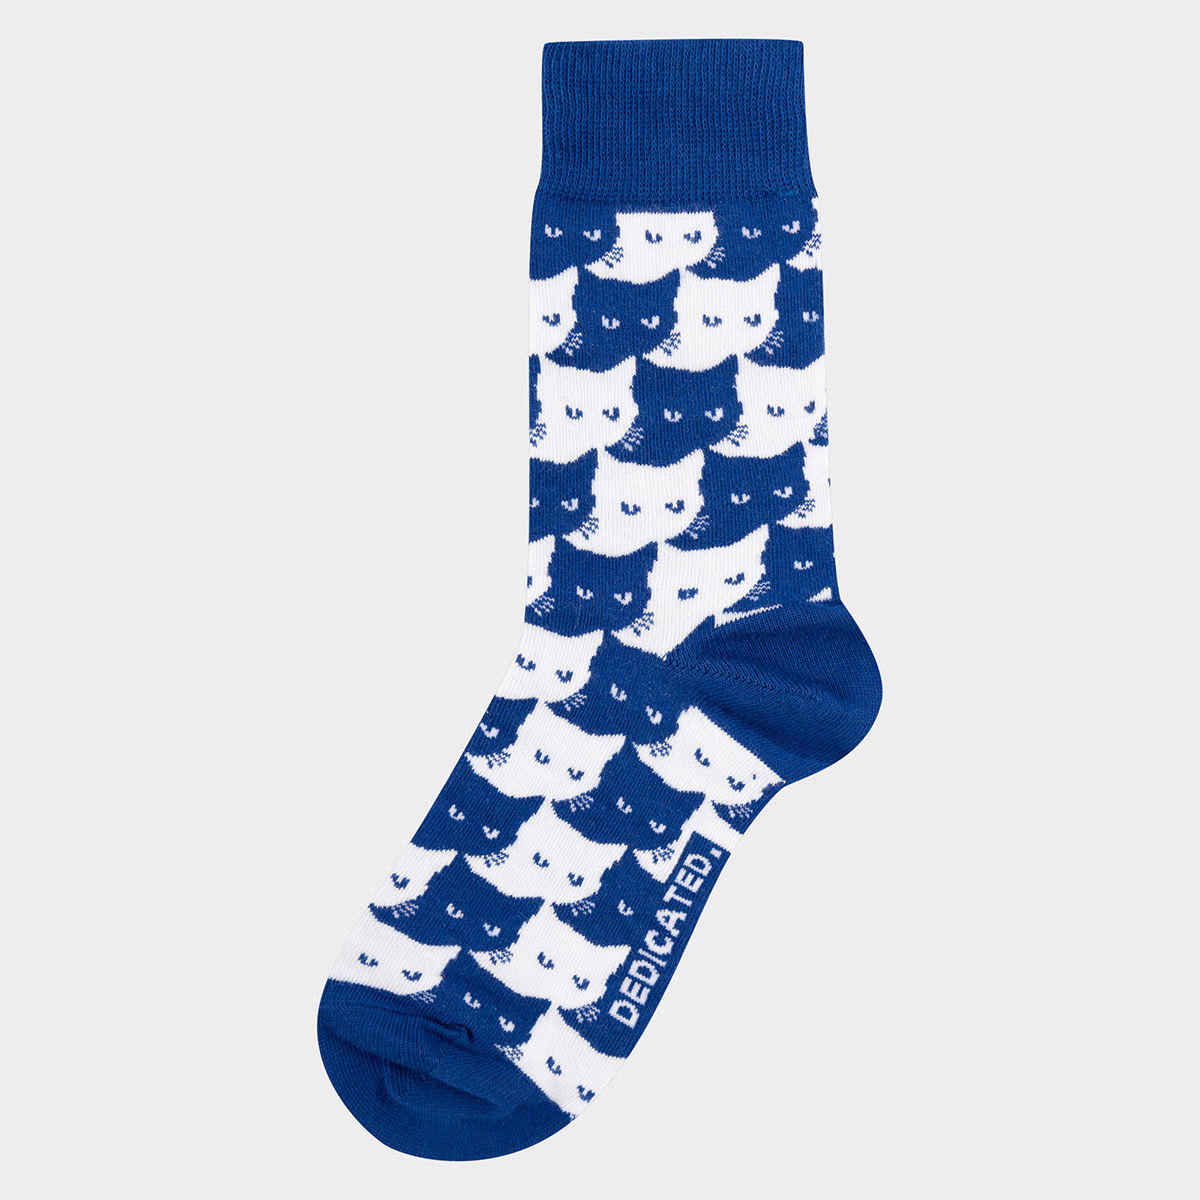 Socken mit Katzen Motiv aus Bio-Baumwolle in Blau, Weinrot oder Schwarz/Weiß.